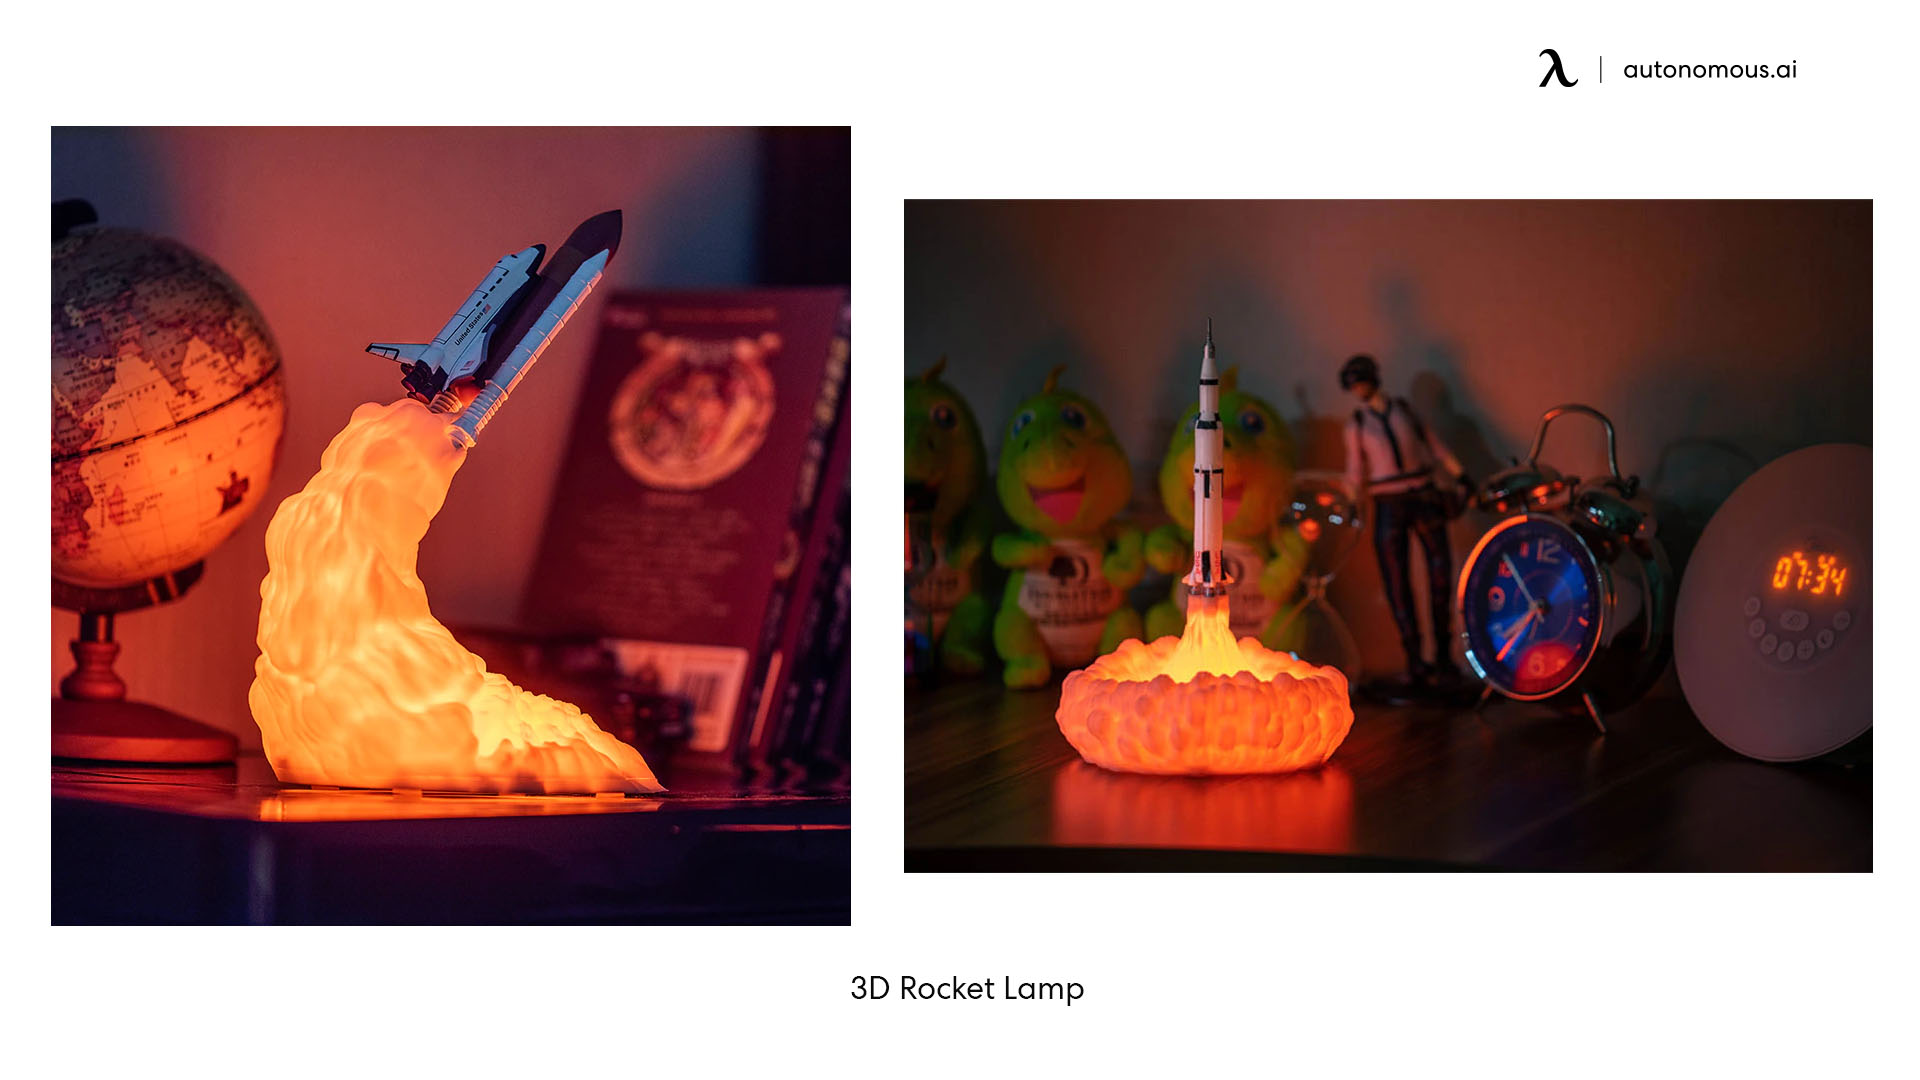 3D Rocket Lamp modern desk accessories